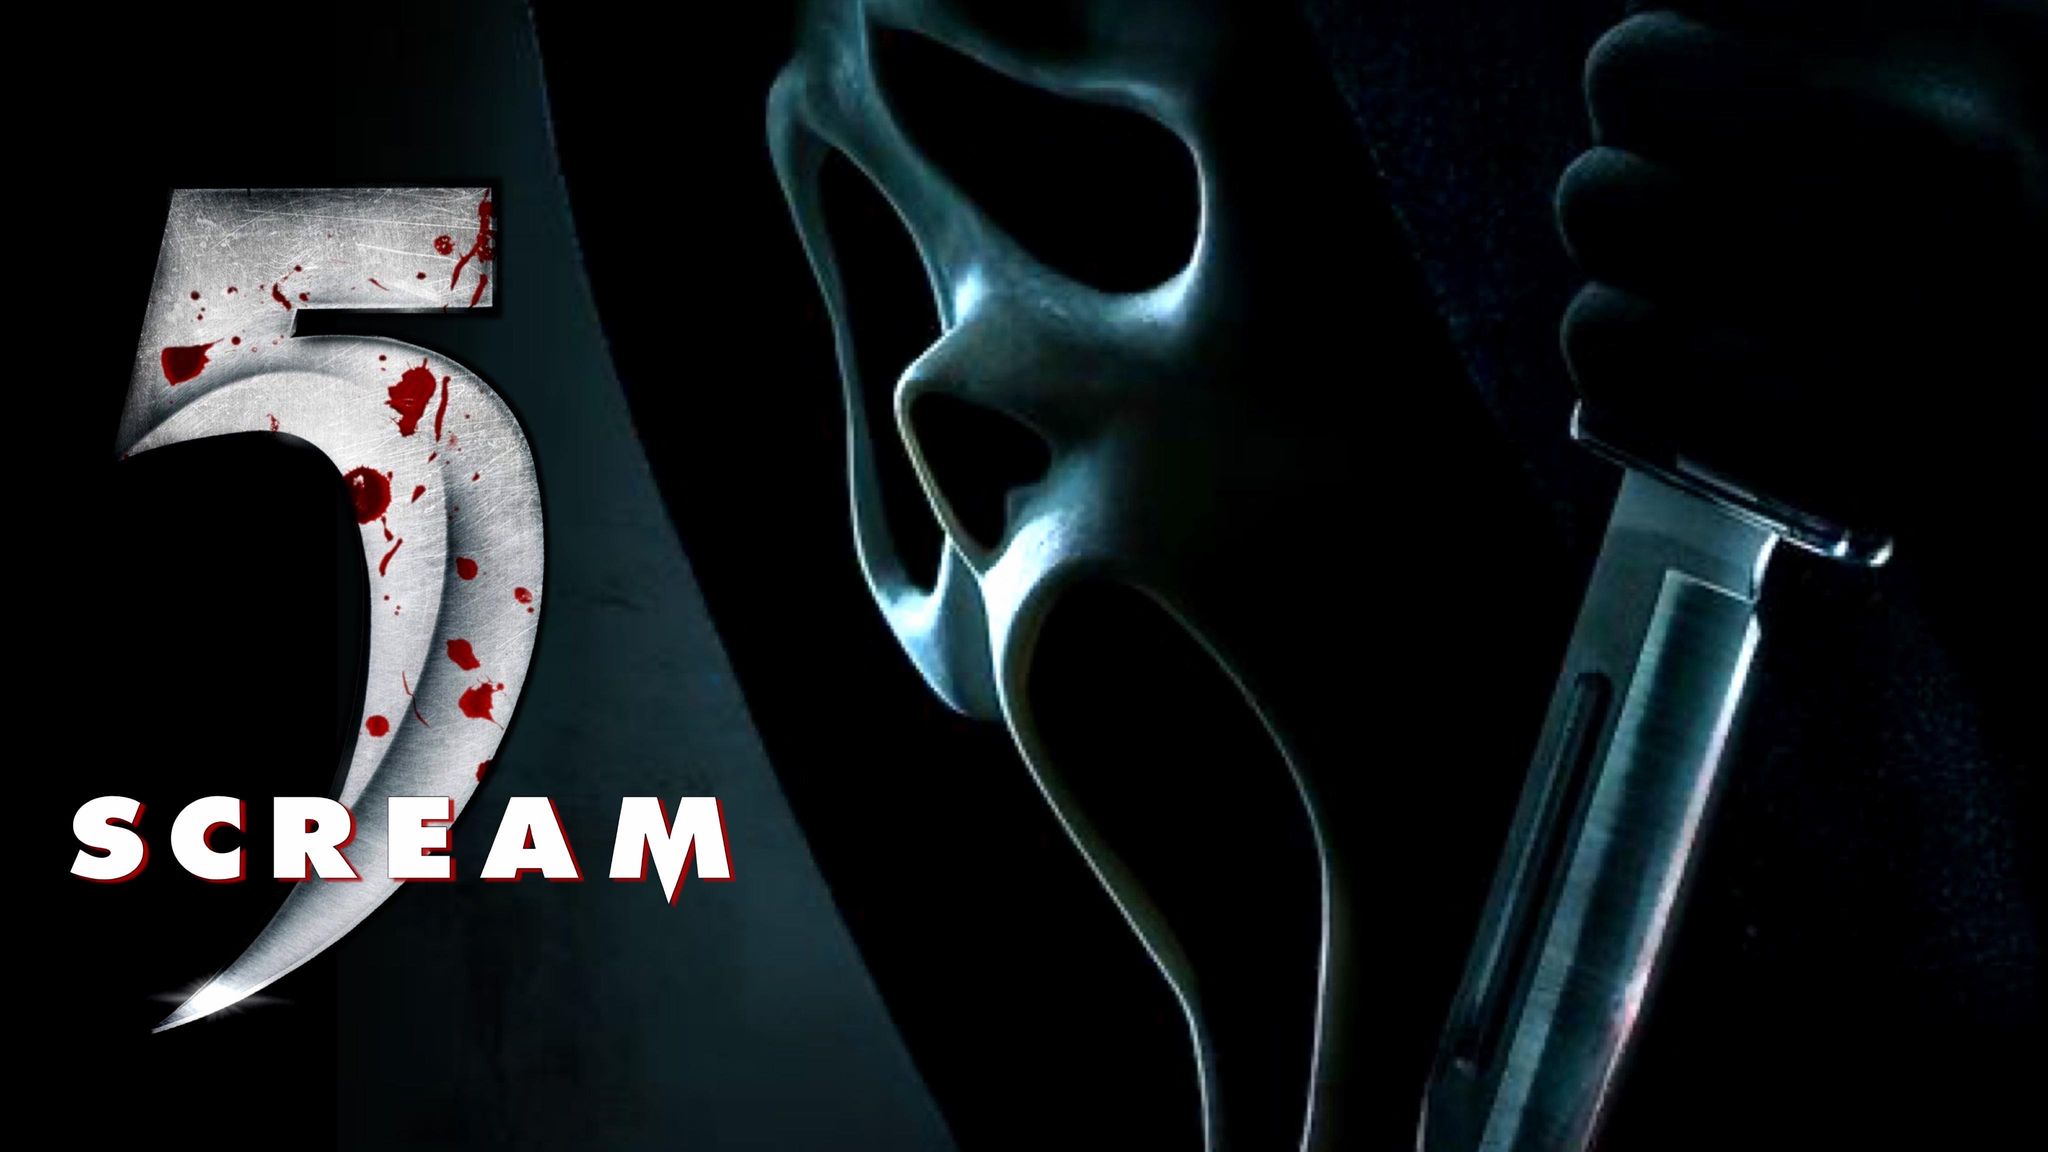 Scream Trailer Released FandomWire